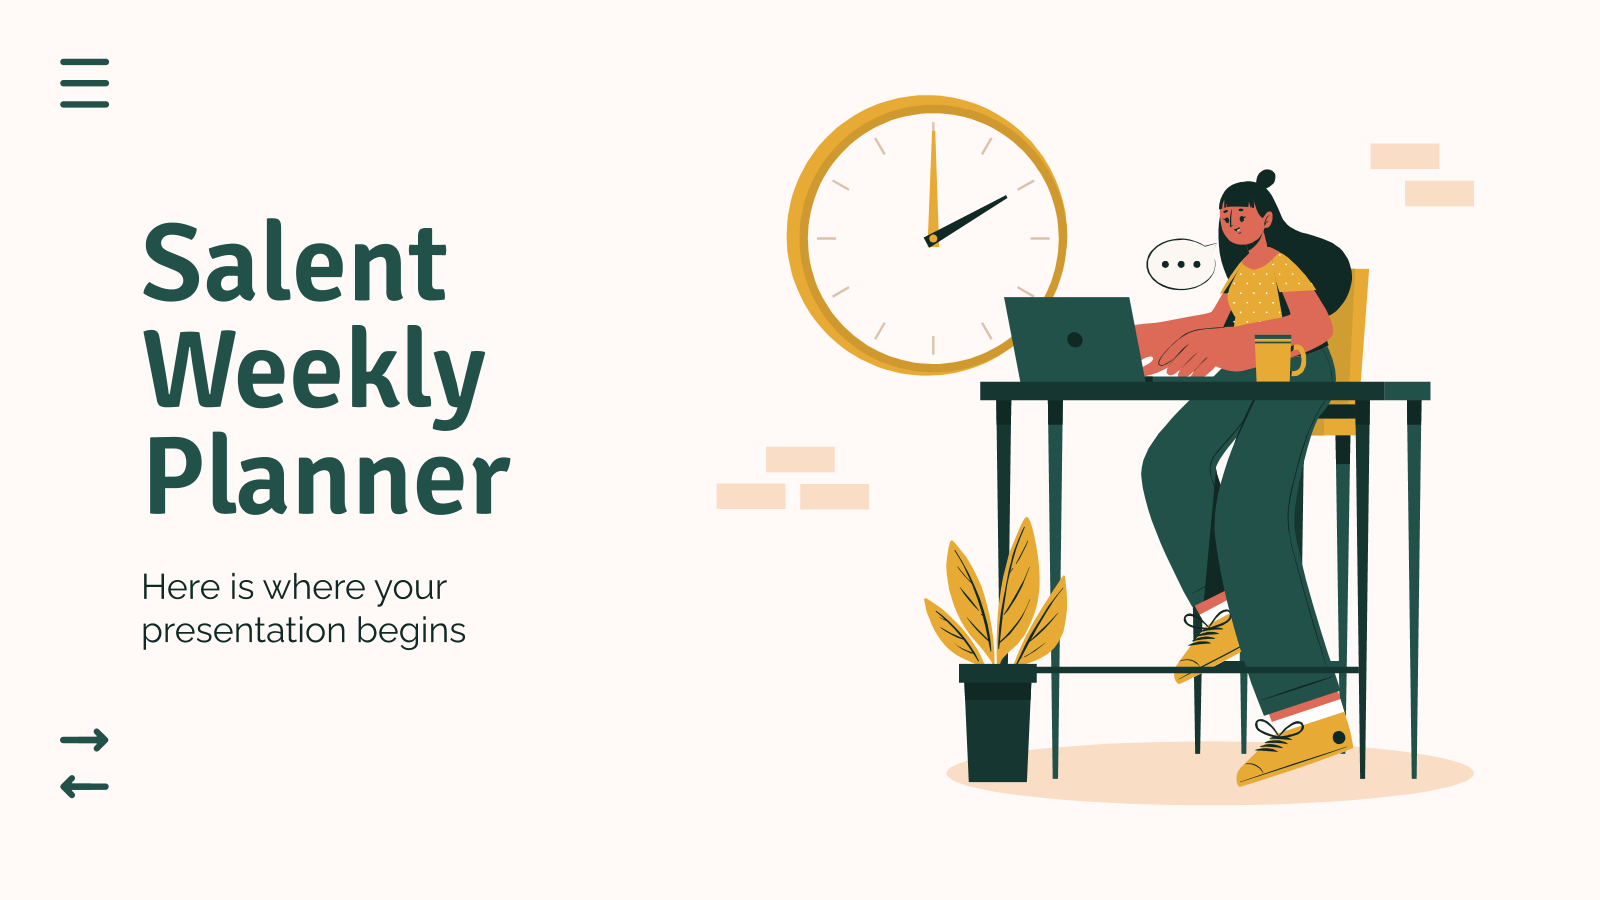 Salent Weekly Planner PowerPoint模板